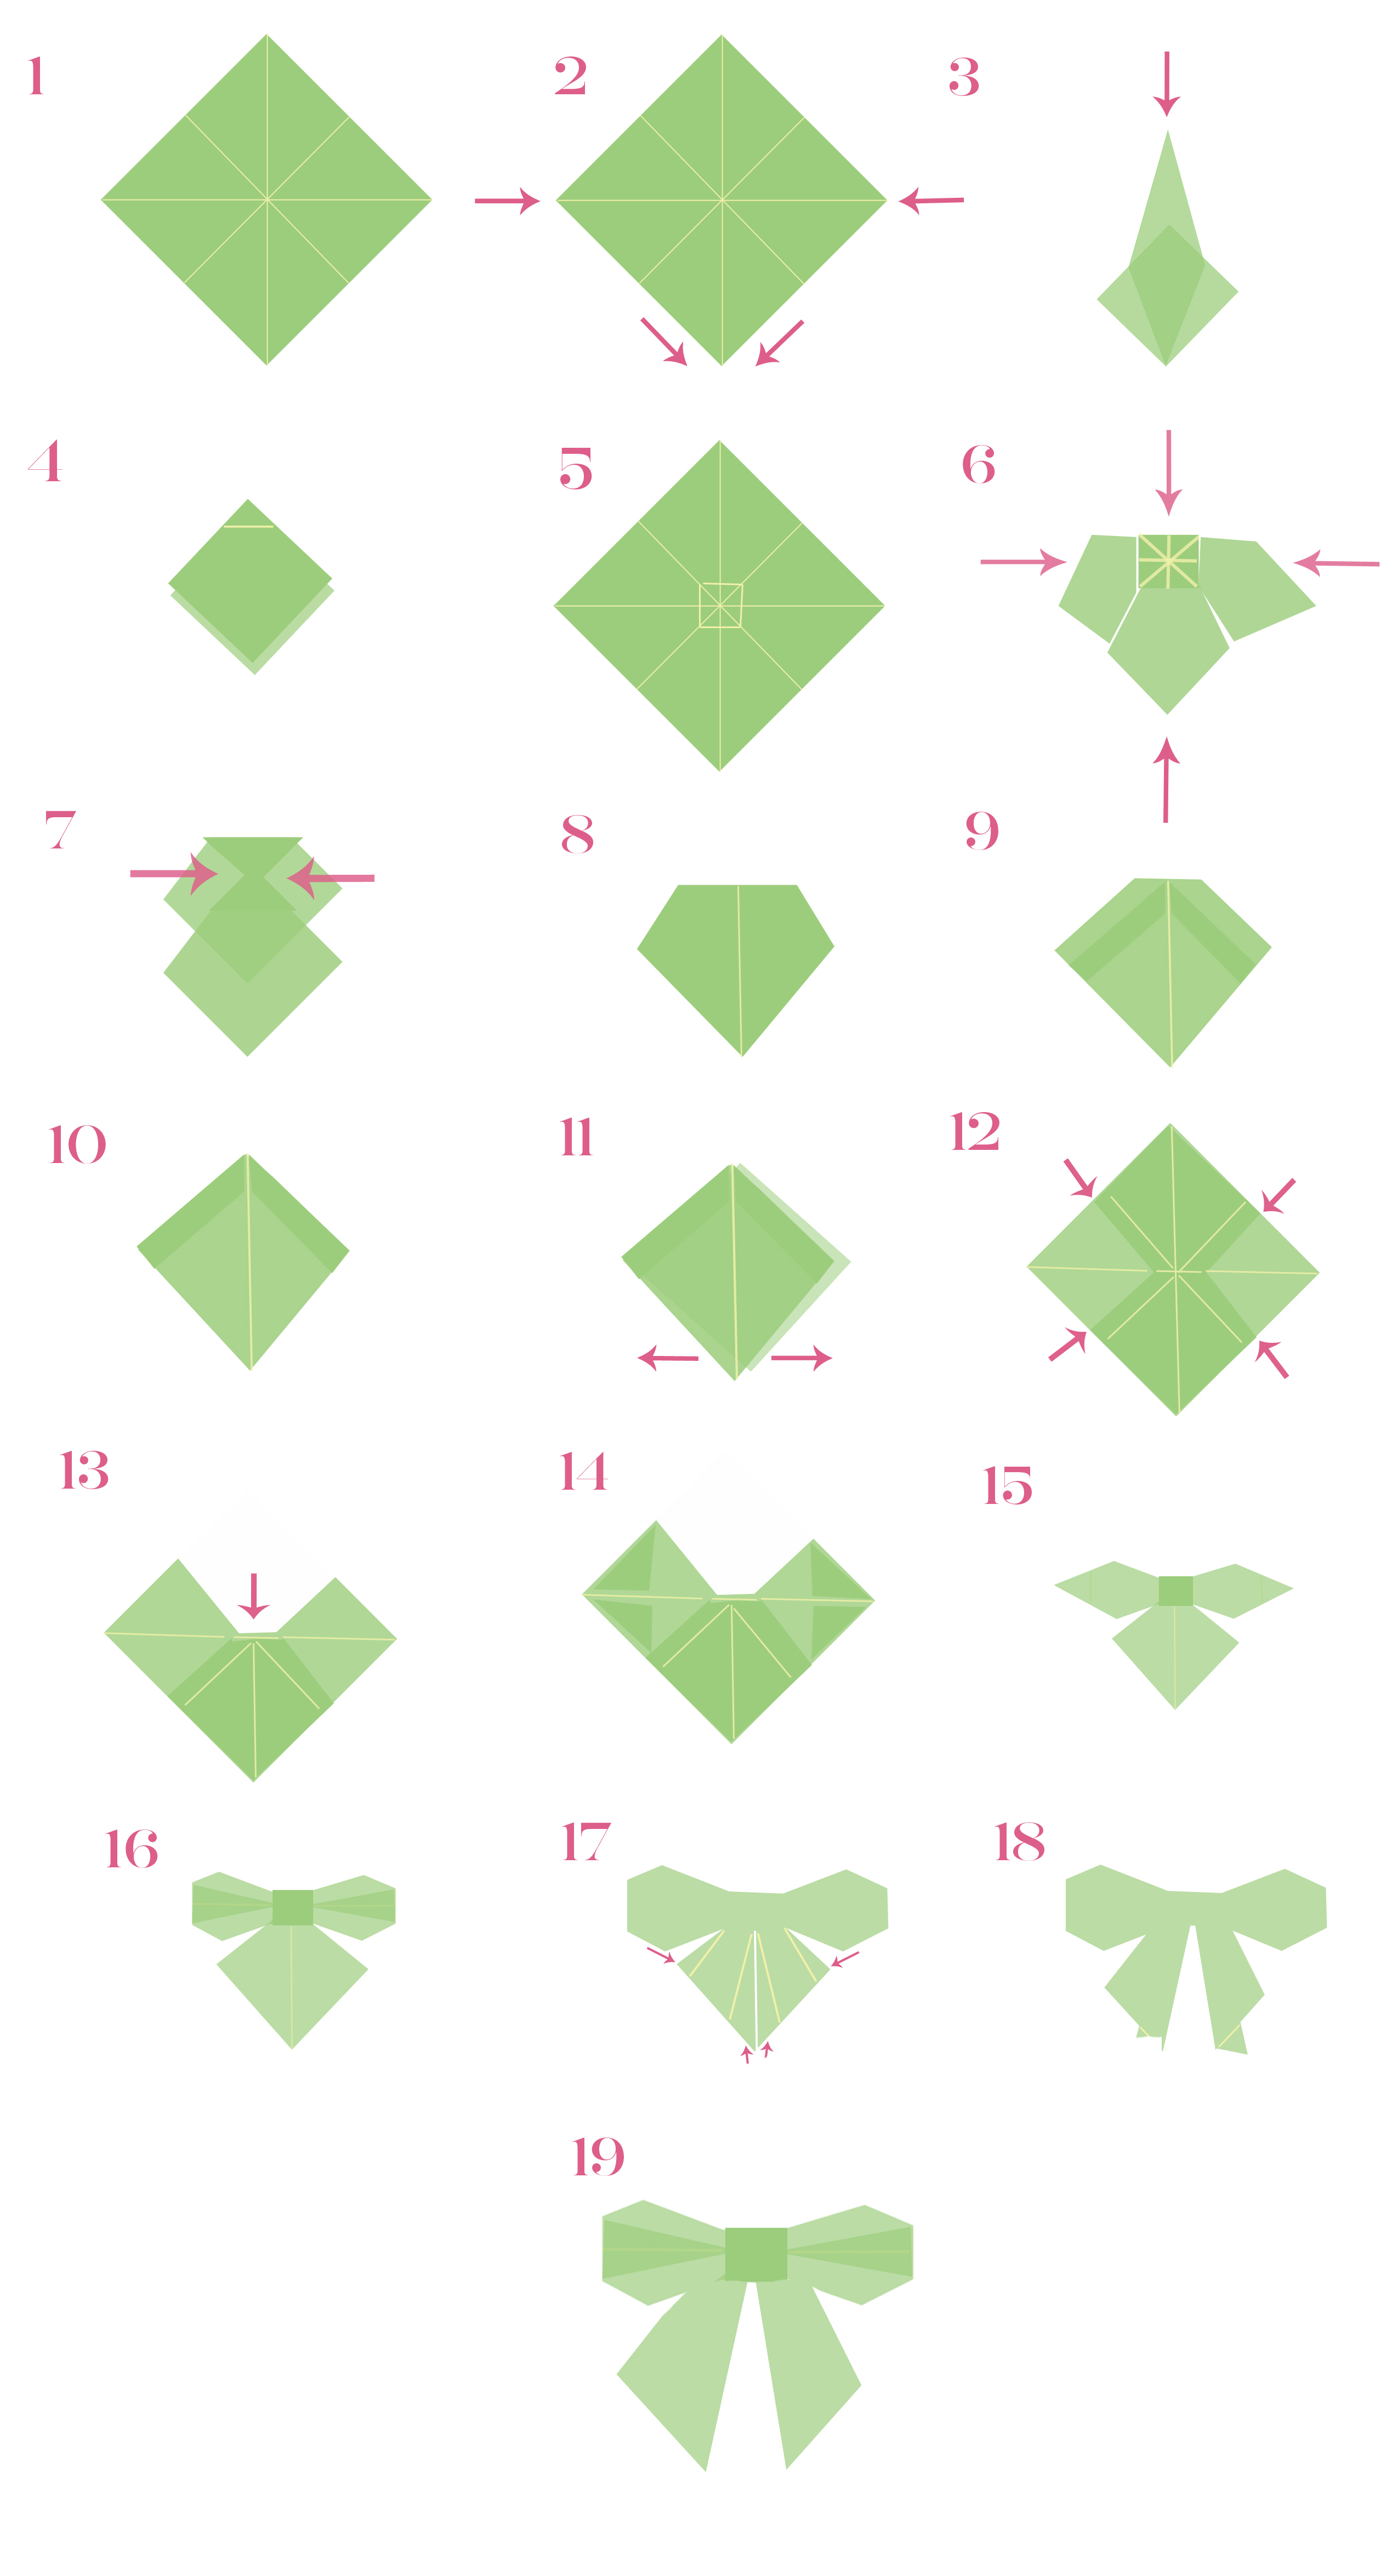 How To Make An Origami Bow Make An Origami Bow Kiwi Magazine Kiwi Magazine